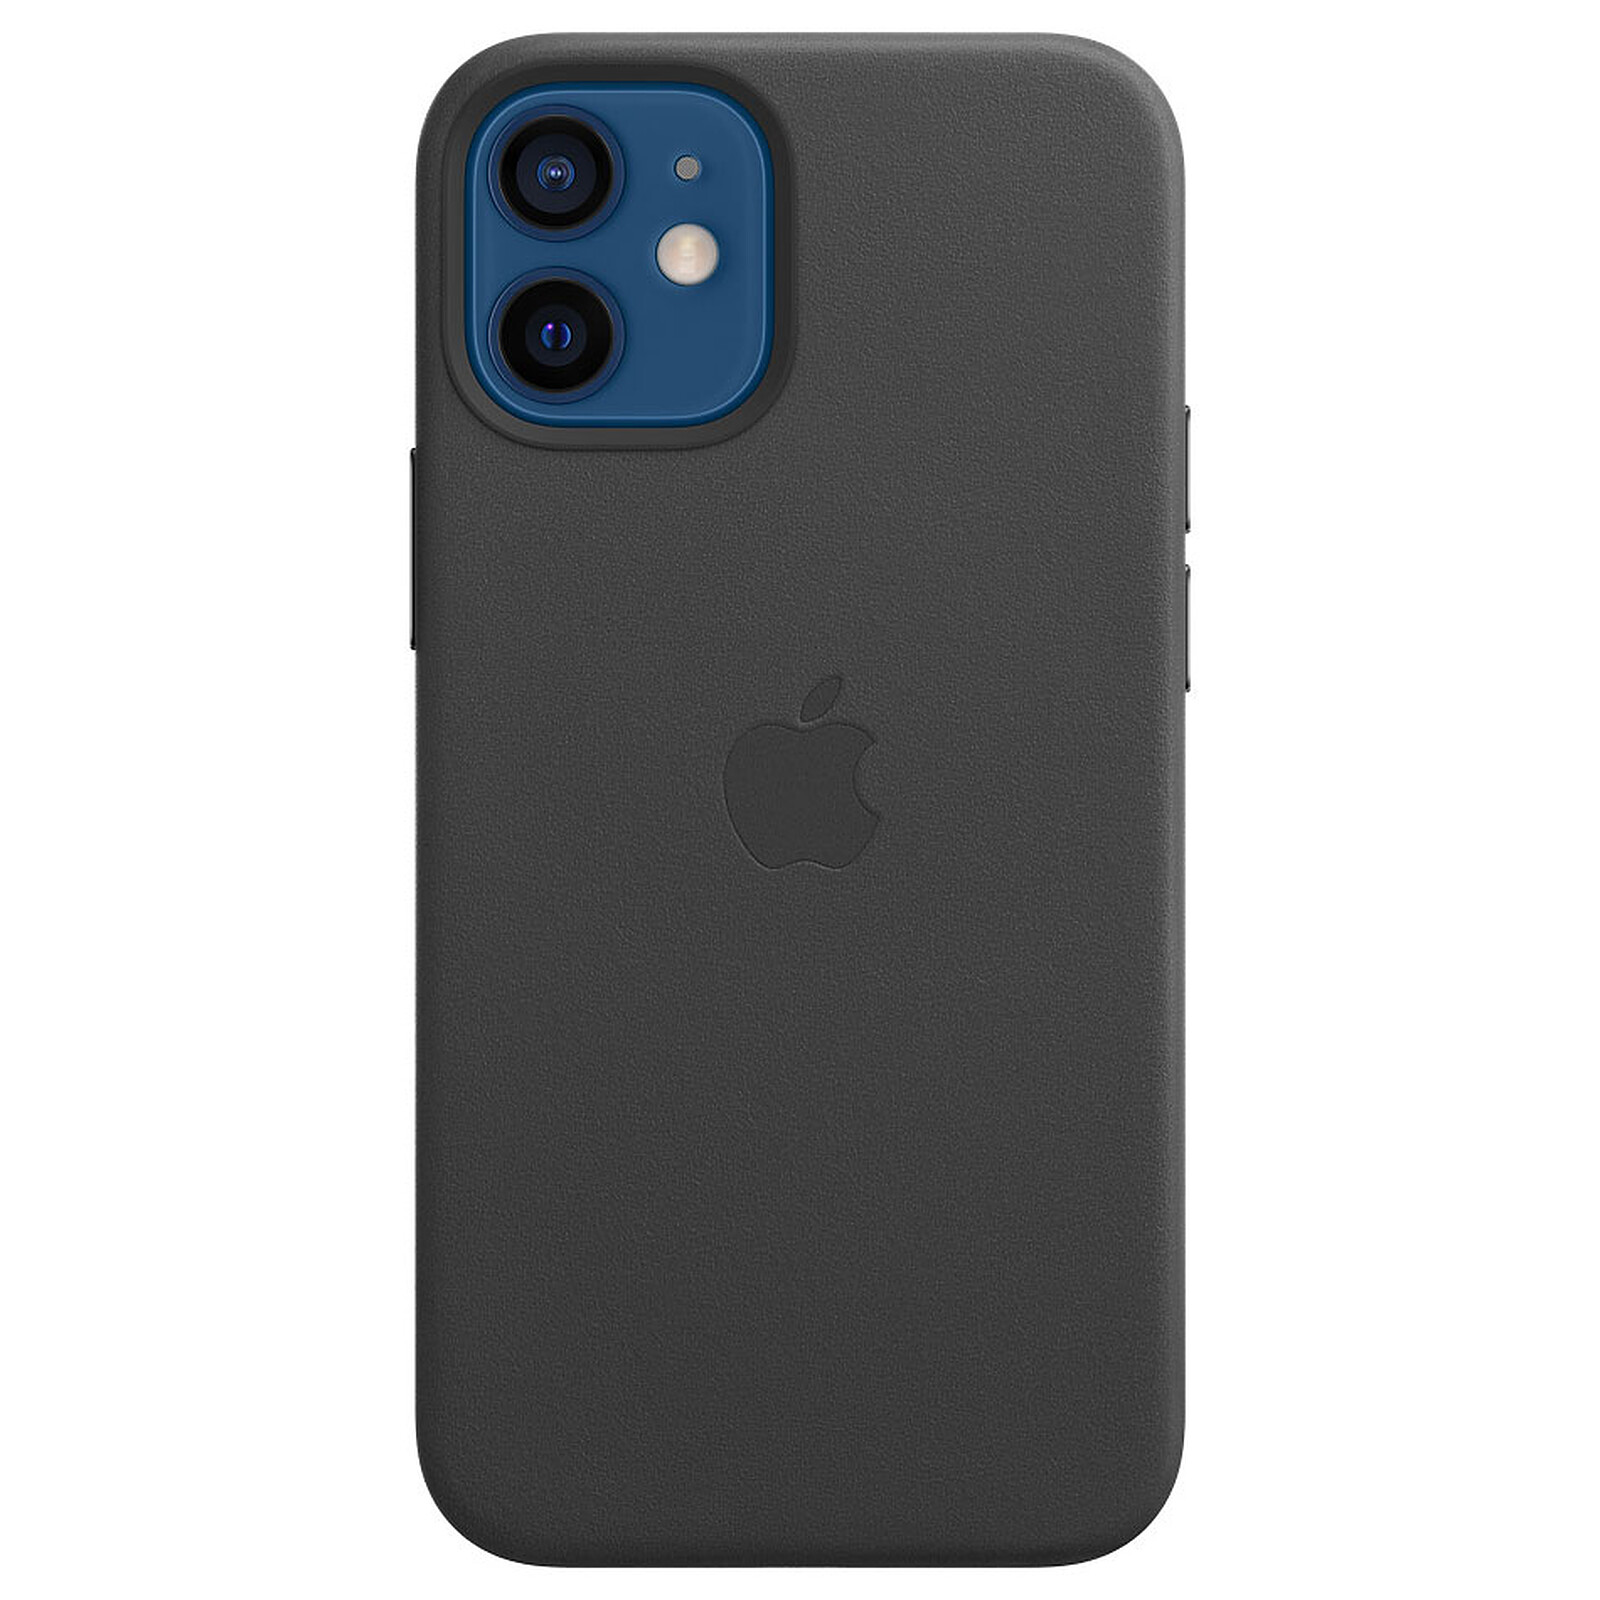 Apple cuero funda con MagSafe para iPhone 12/12 pro sillín marrón cubierta protectora